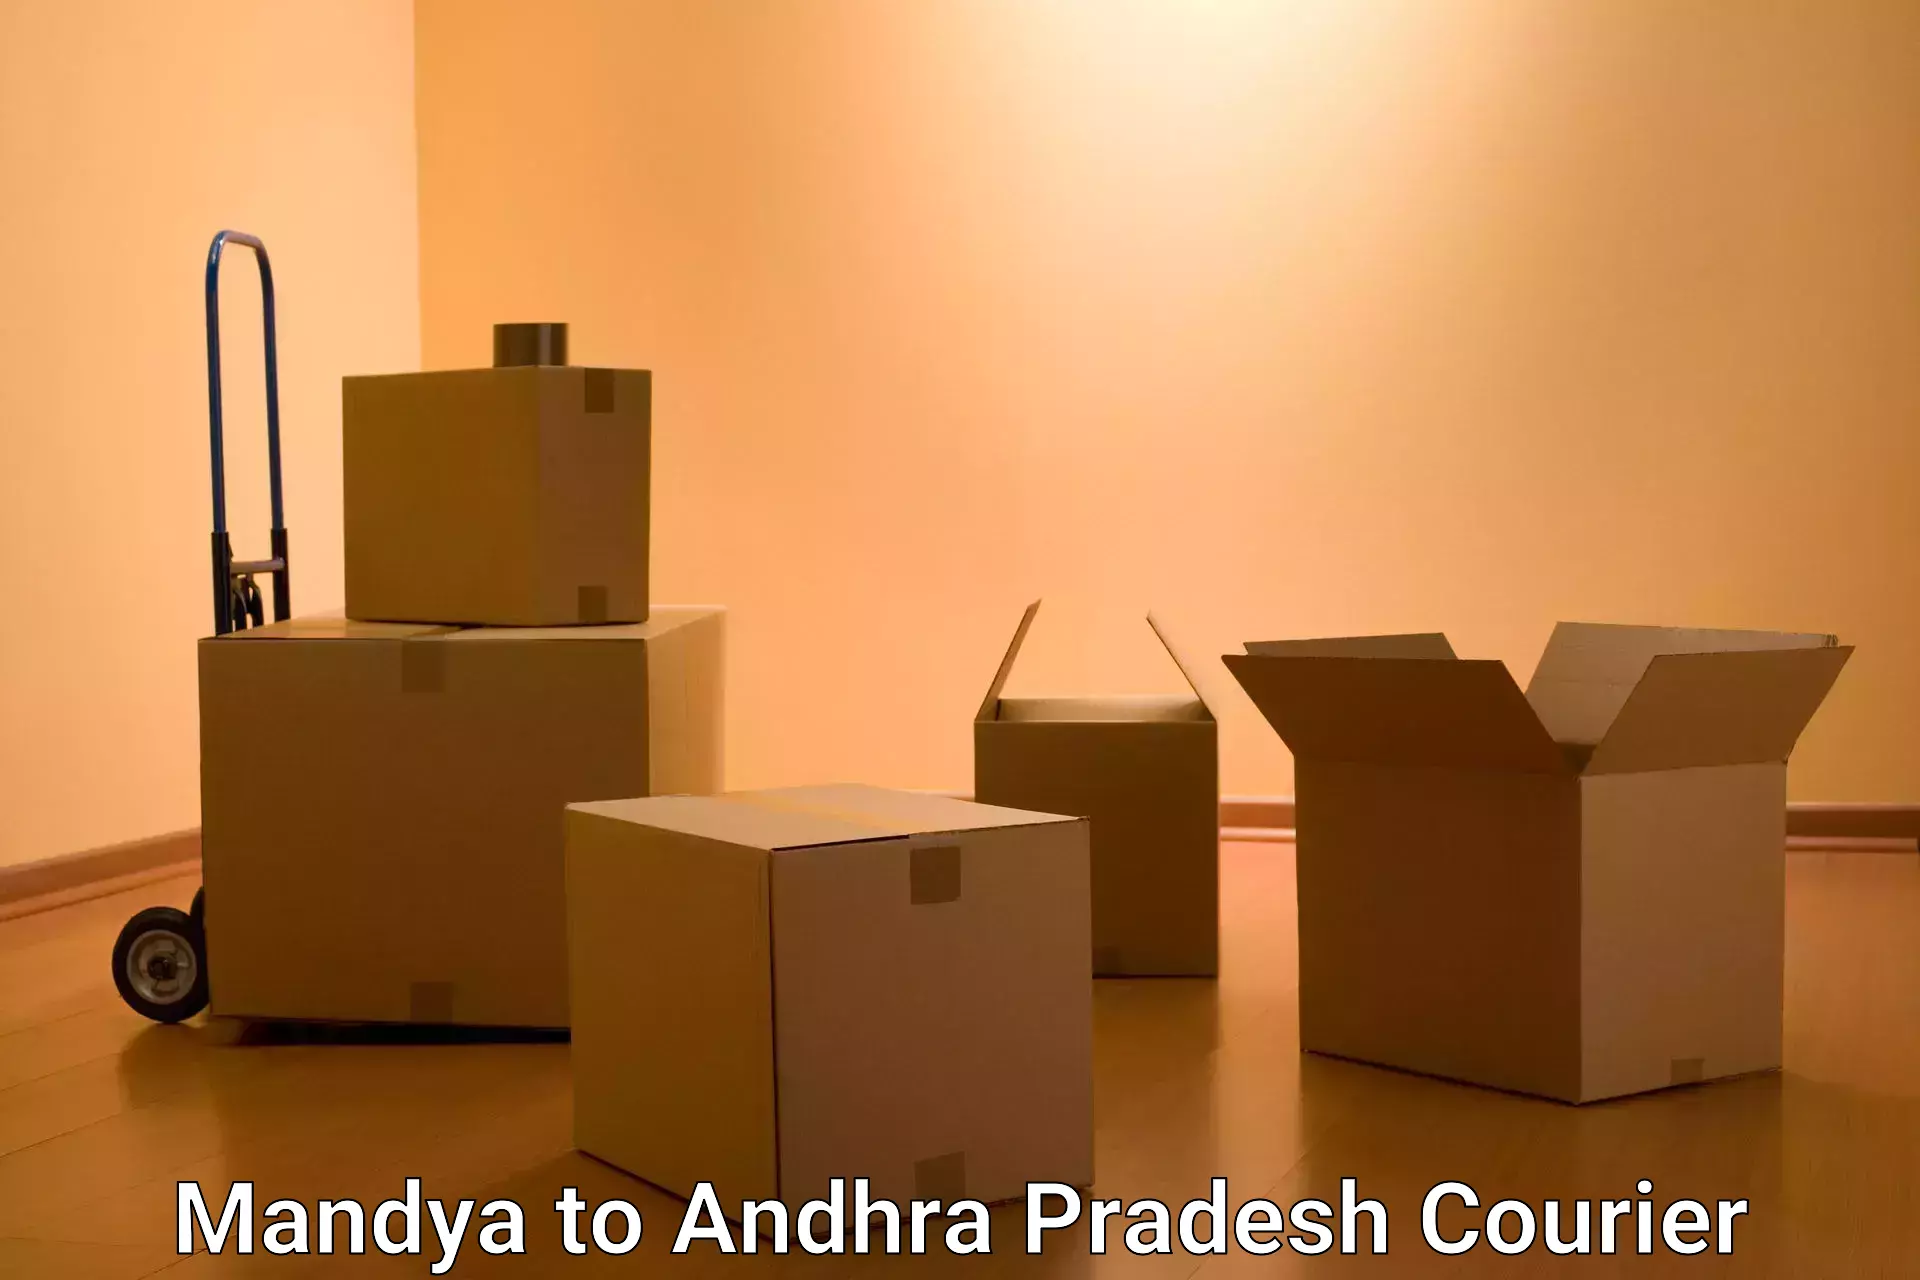 Express mail service Mandya to NIT Andhra Pradesh